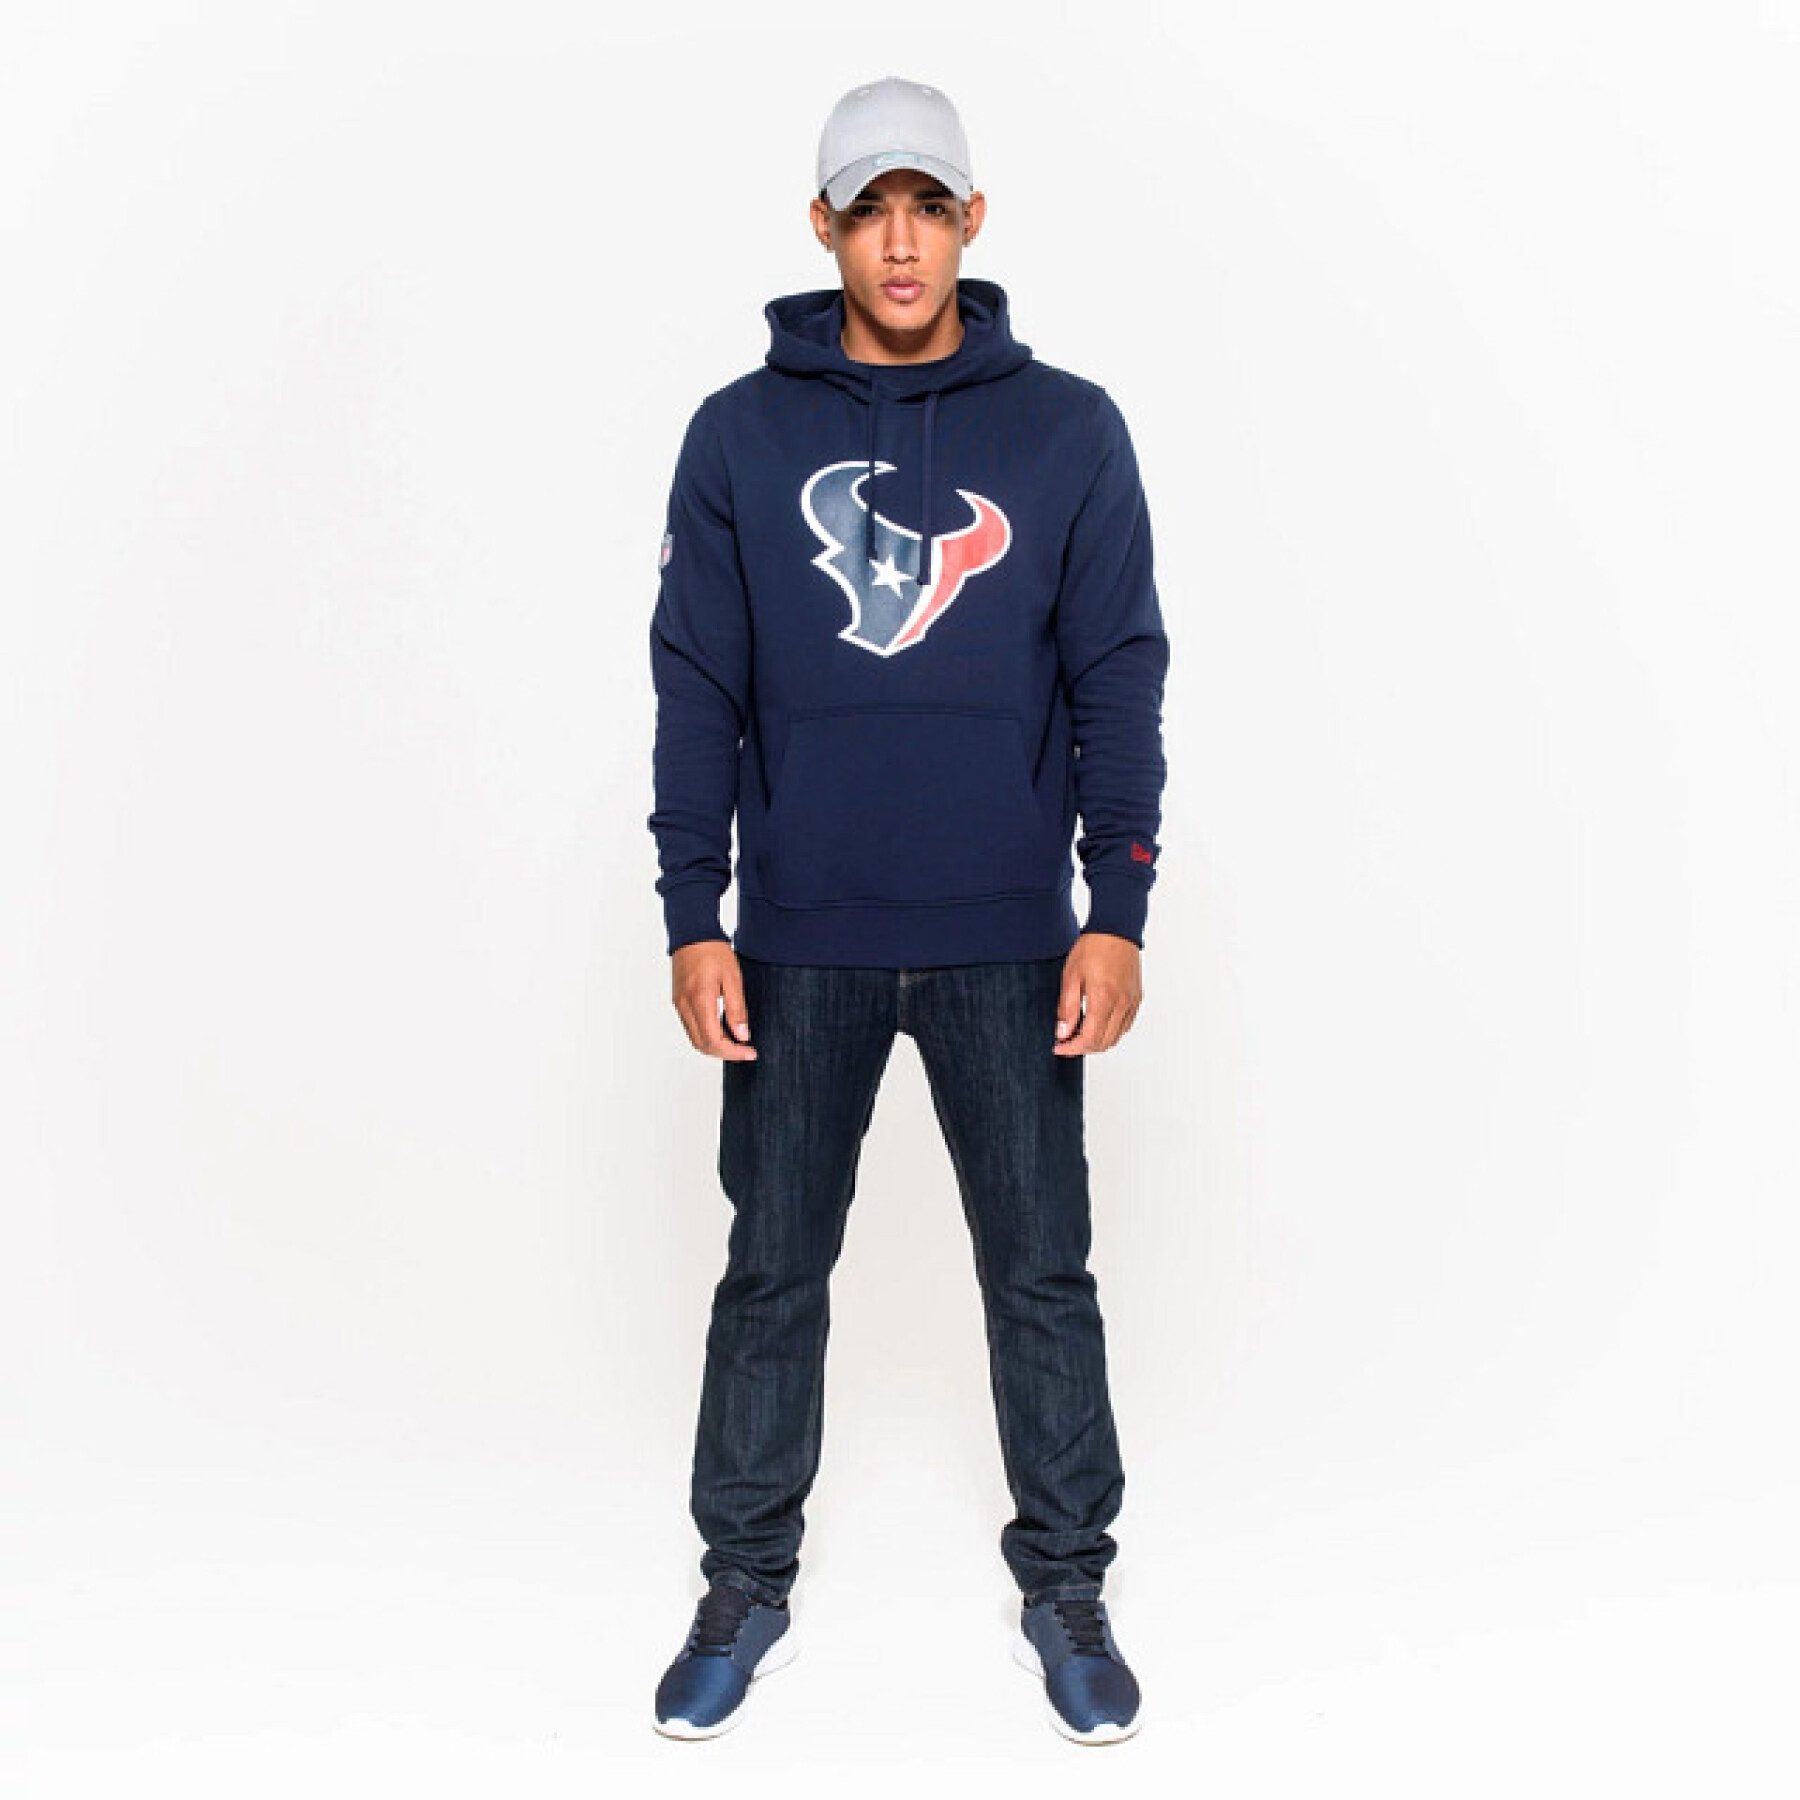 Hooded sweatshirt Houston Texans NFL